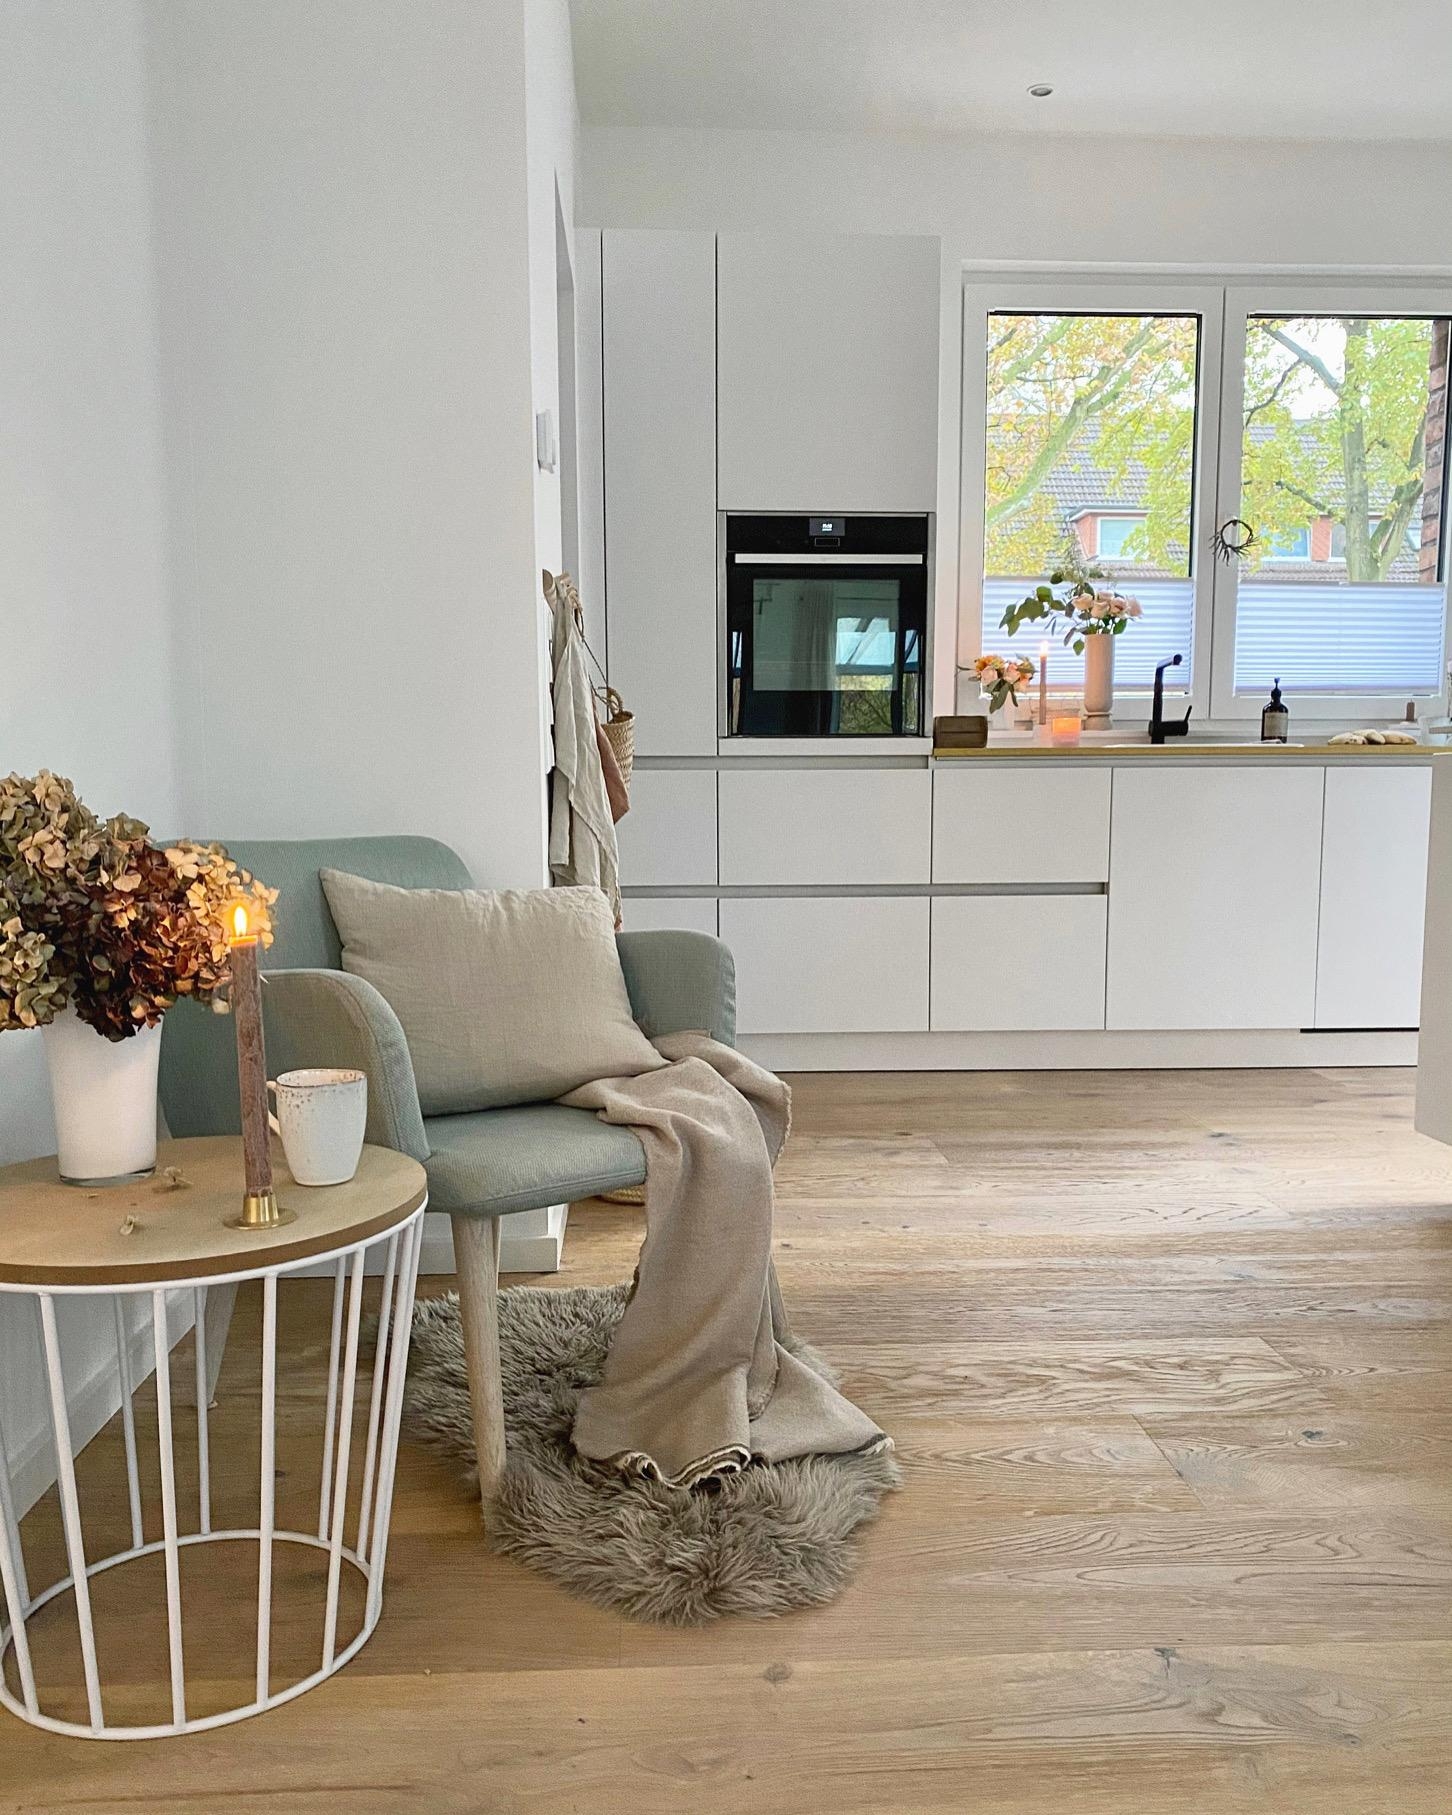 Hello from this lovely corner 🧡
#whitekitchen#whiteliving#interior#hygge#couchliebt#couchstyle#küche